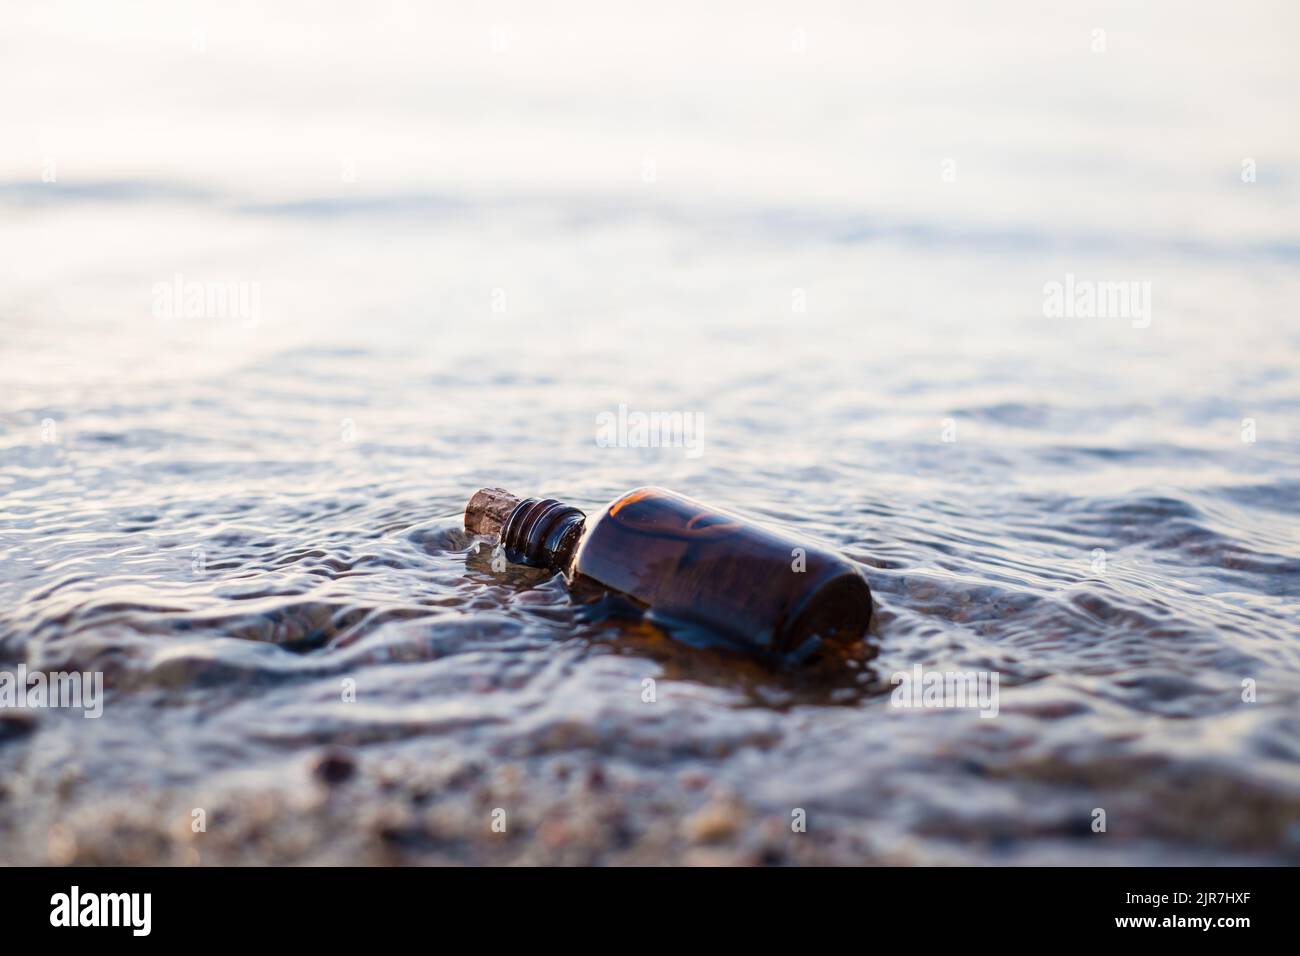 Flasche ätherisches Öl am Strand in Wellen. Kleine braune Medizinflasche im Hintergrund der Natur. Hanföl aus biologischem CBD. Stockfoto